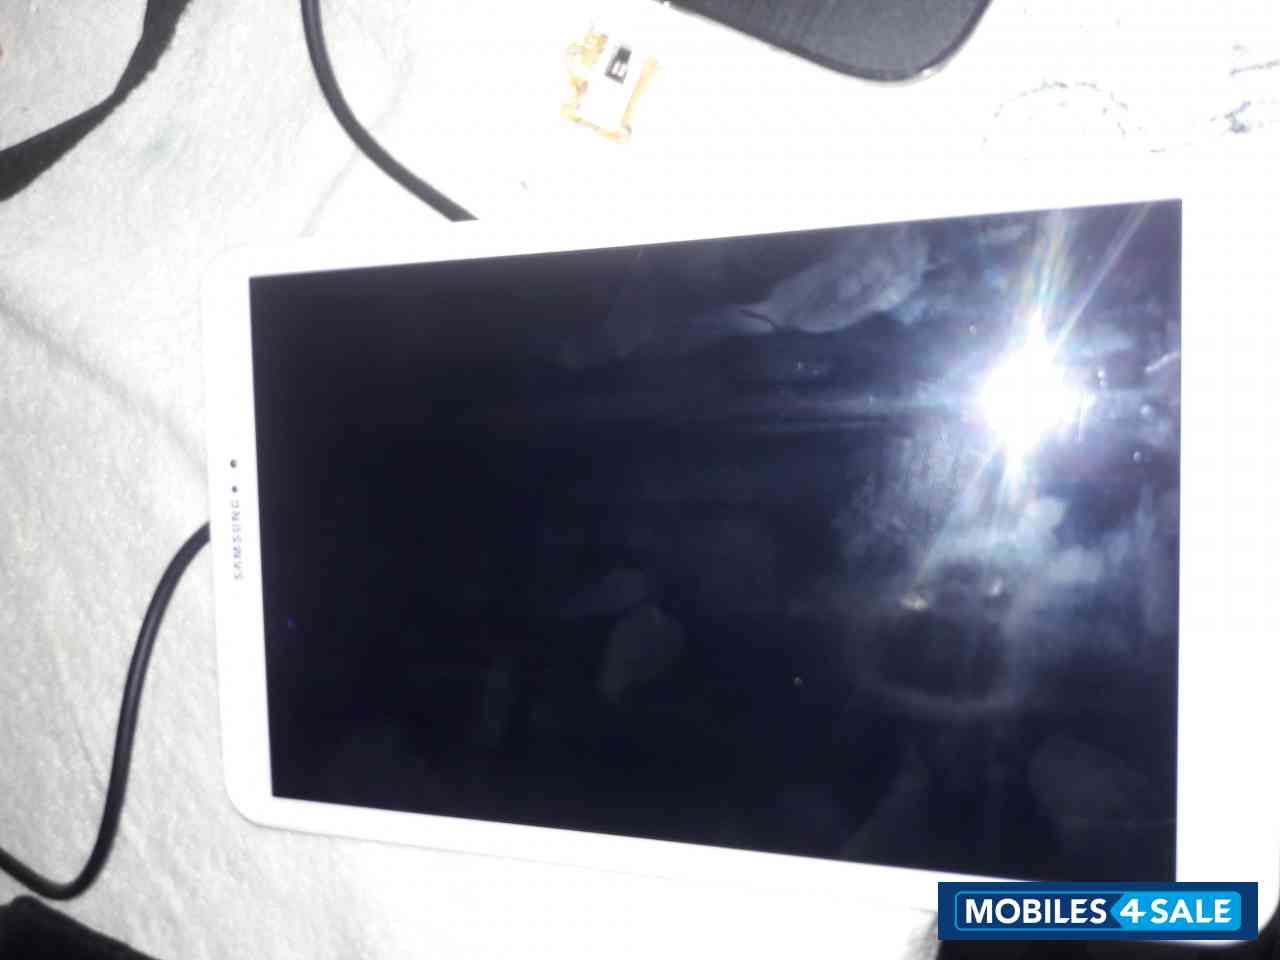 Samsung  Samsung Galaxy Tab A SM-T580 10.1-Inch Touchscreen International Version (16GB)